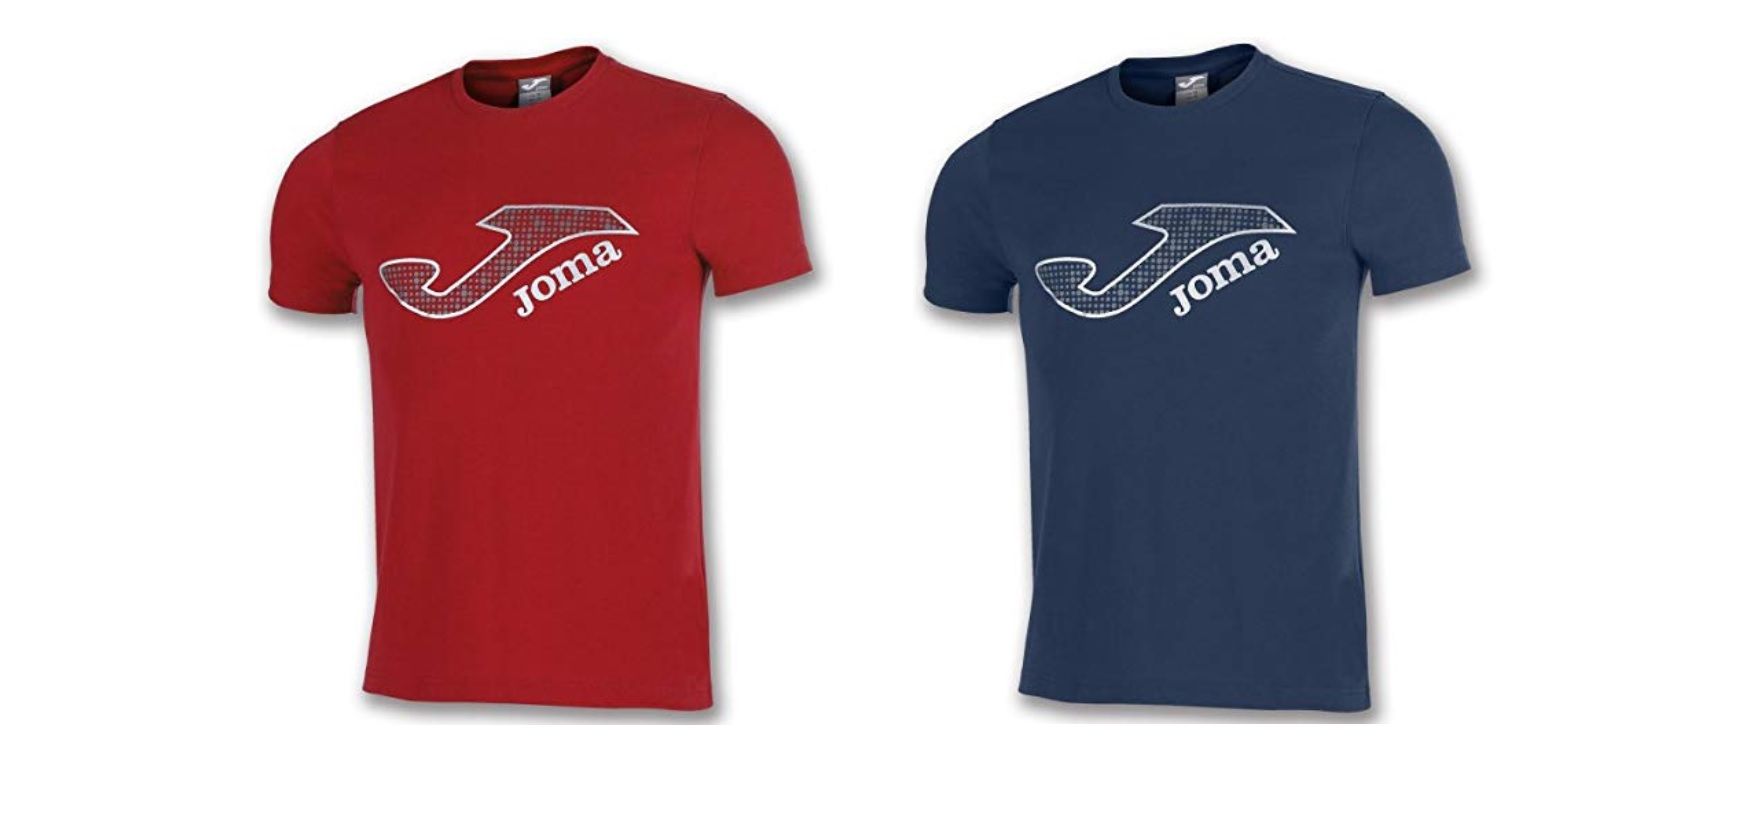 ¡Chollo plus! Camiseta Joma Marsella por sólo 5,99€ ¡En varios colores!